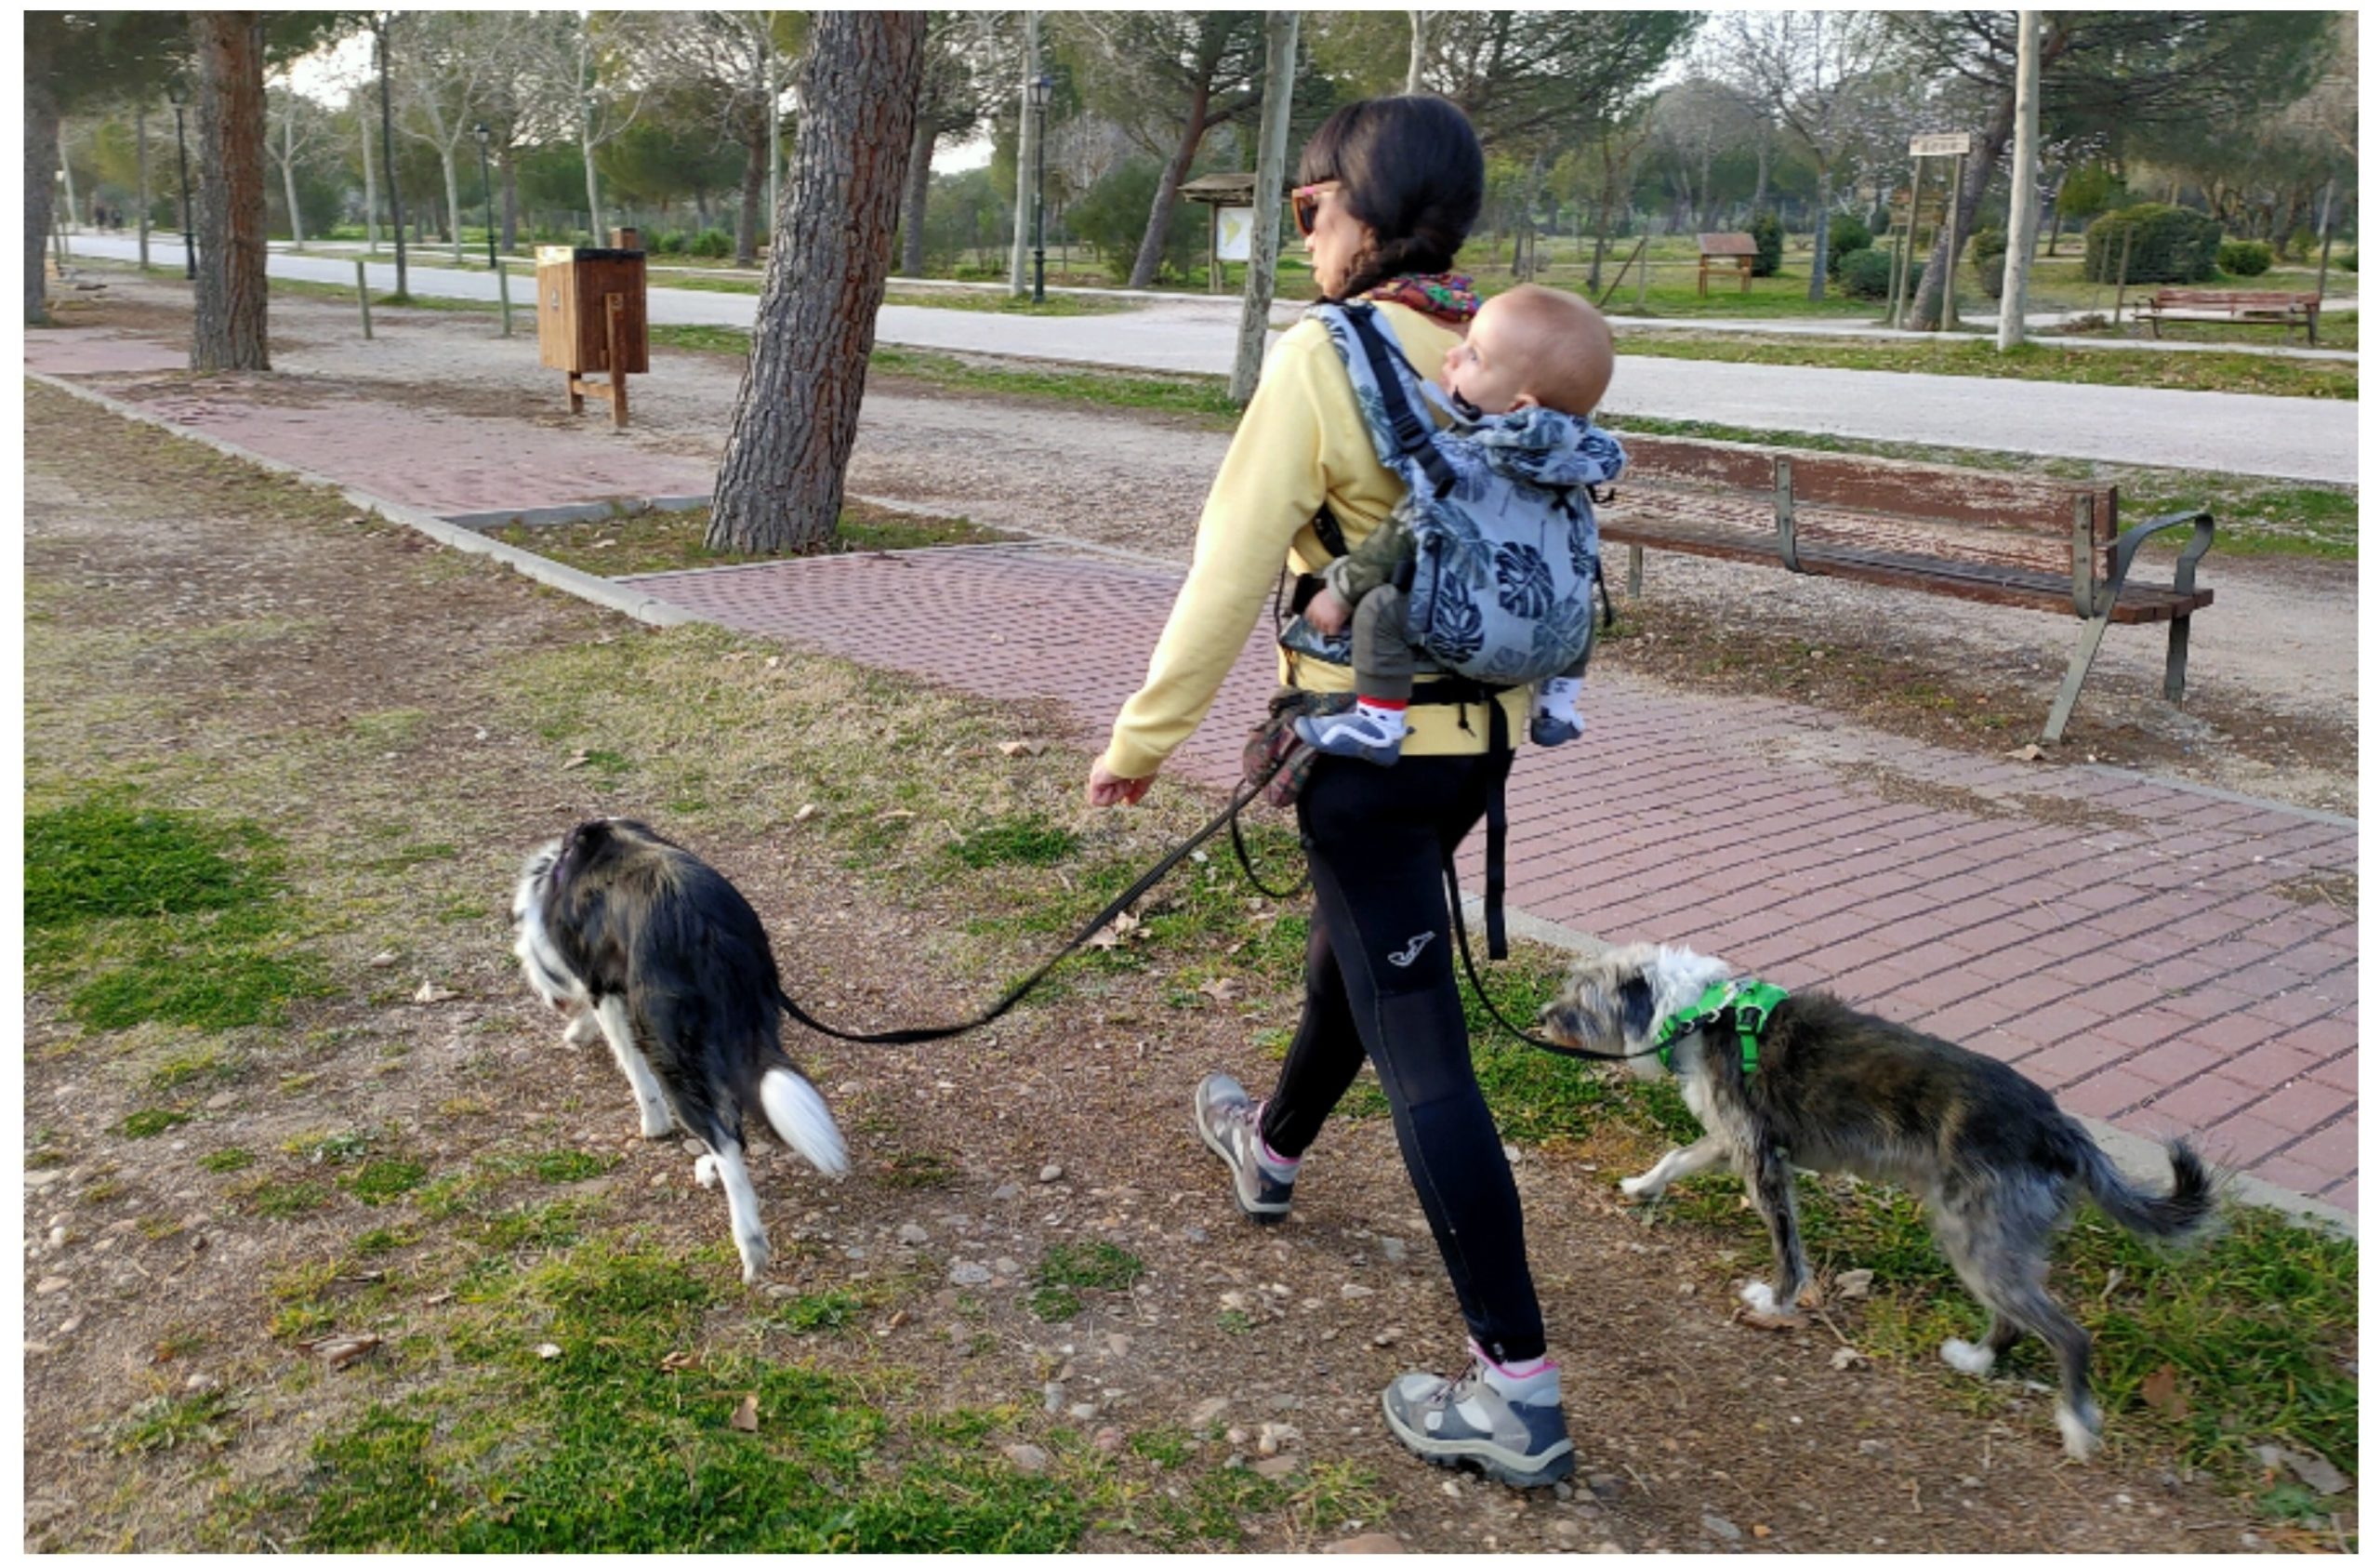 Mama multiespecie paseando con perros y bebé porteado